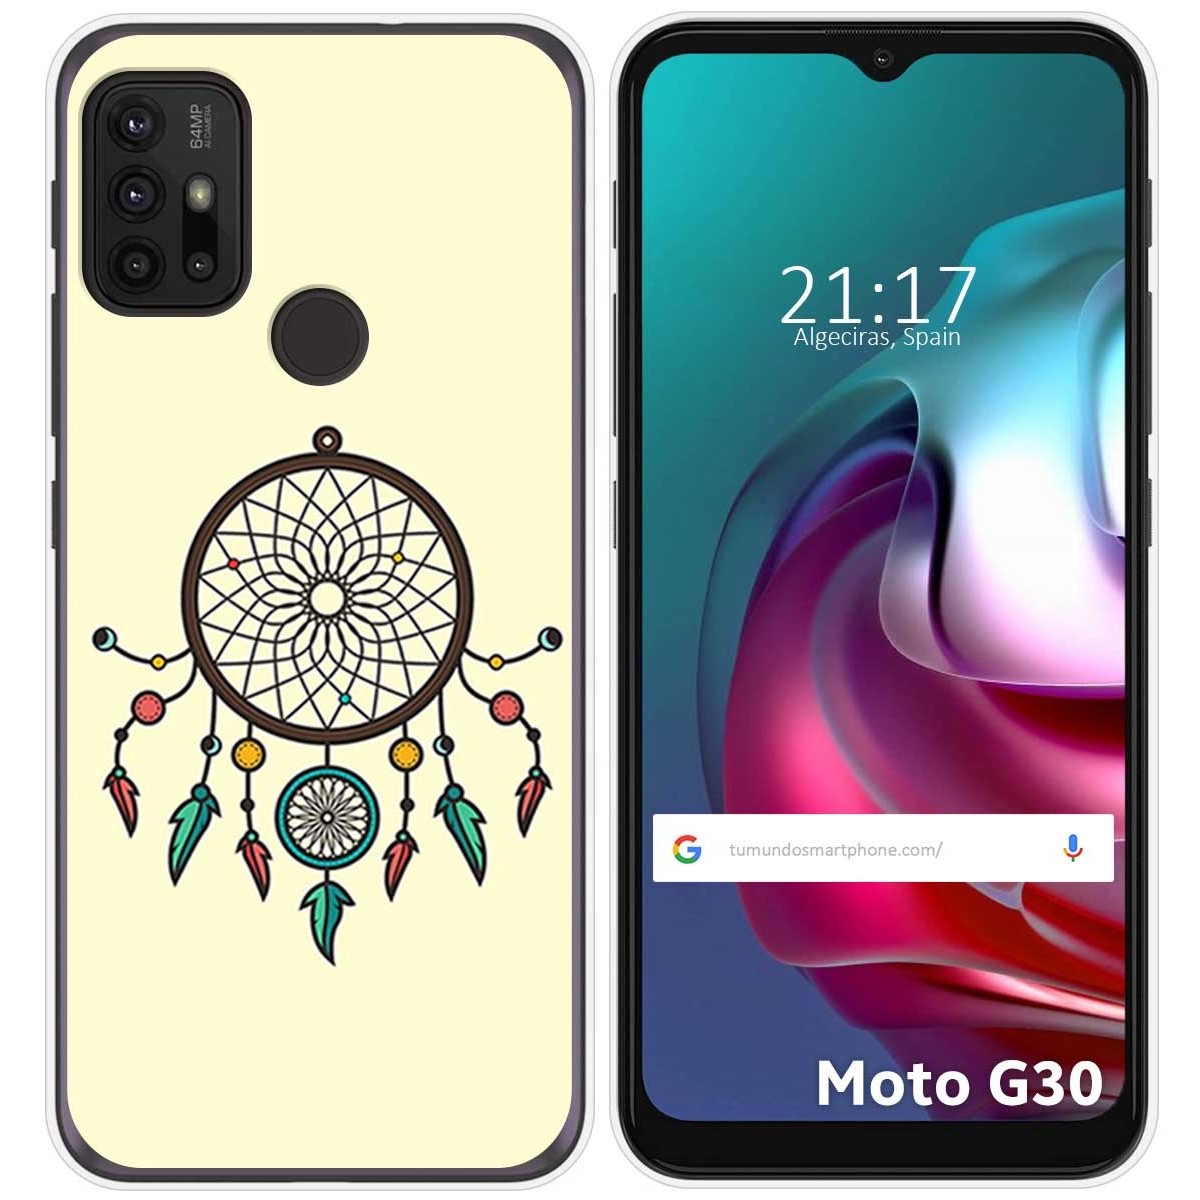 Funda Gel Tpu para Motorola Moto G10 / G20 / G30 diseño Atrapasueños Dibujos